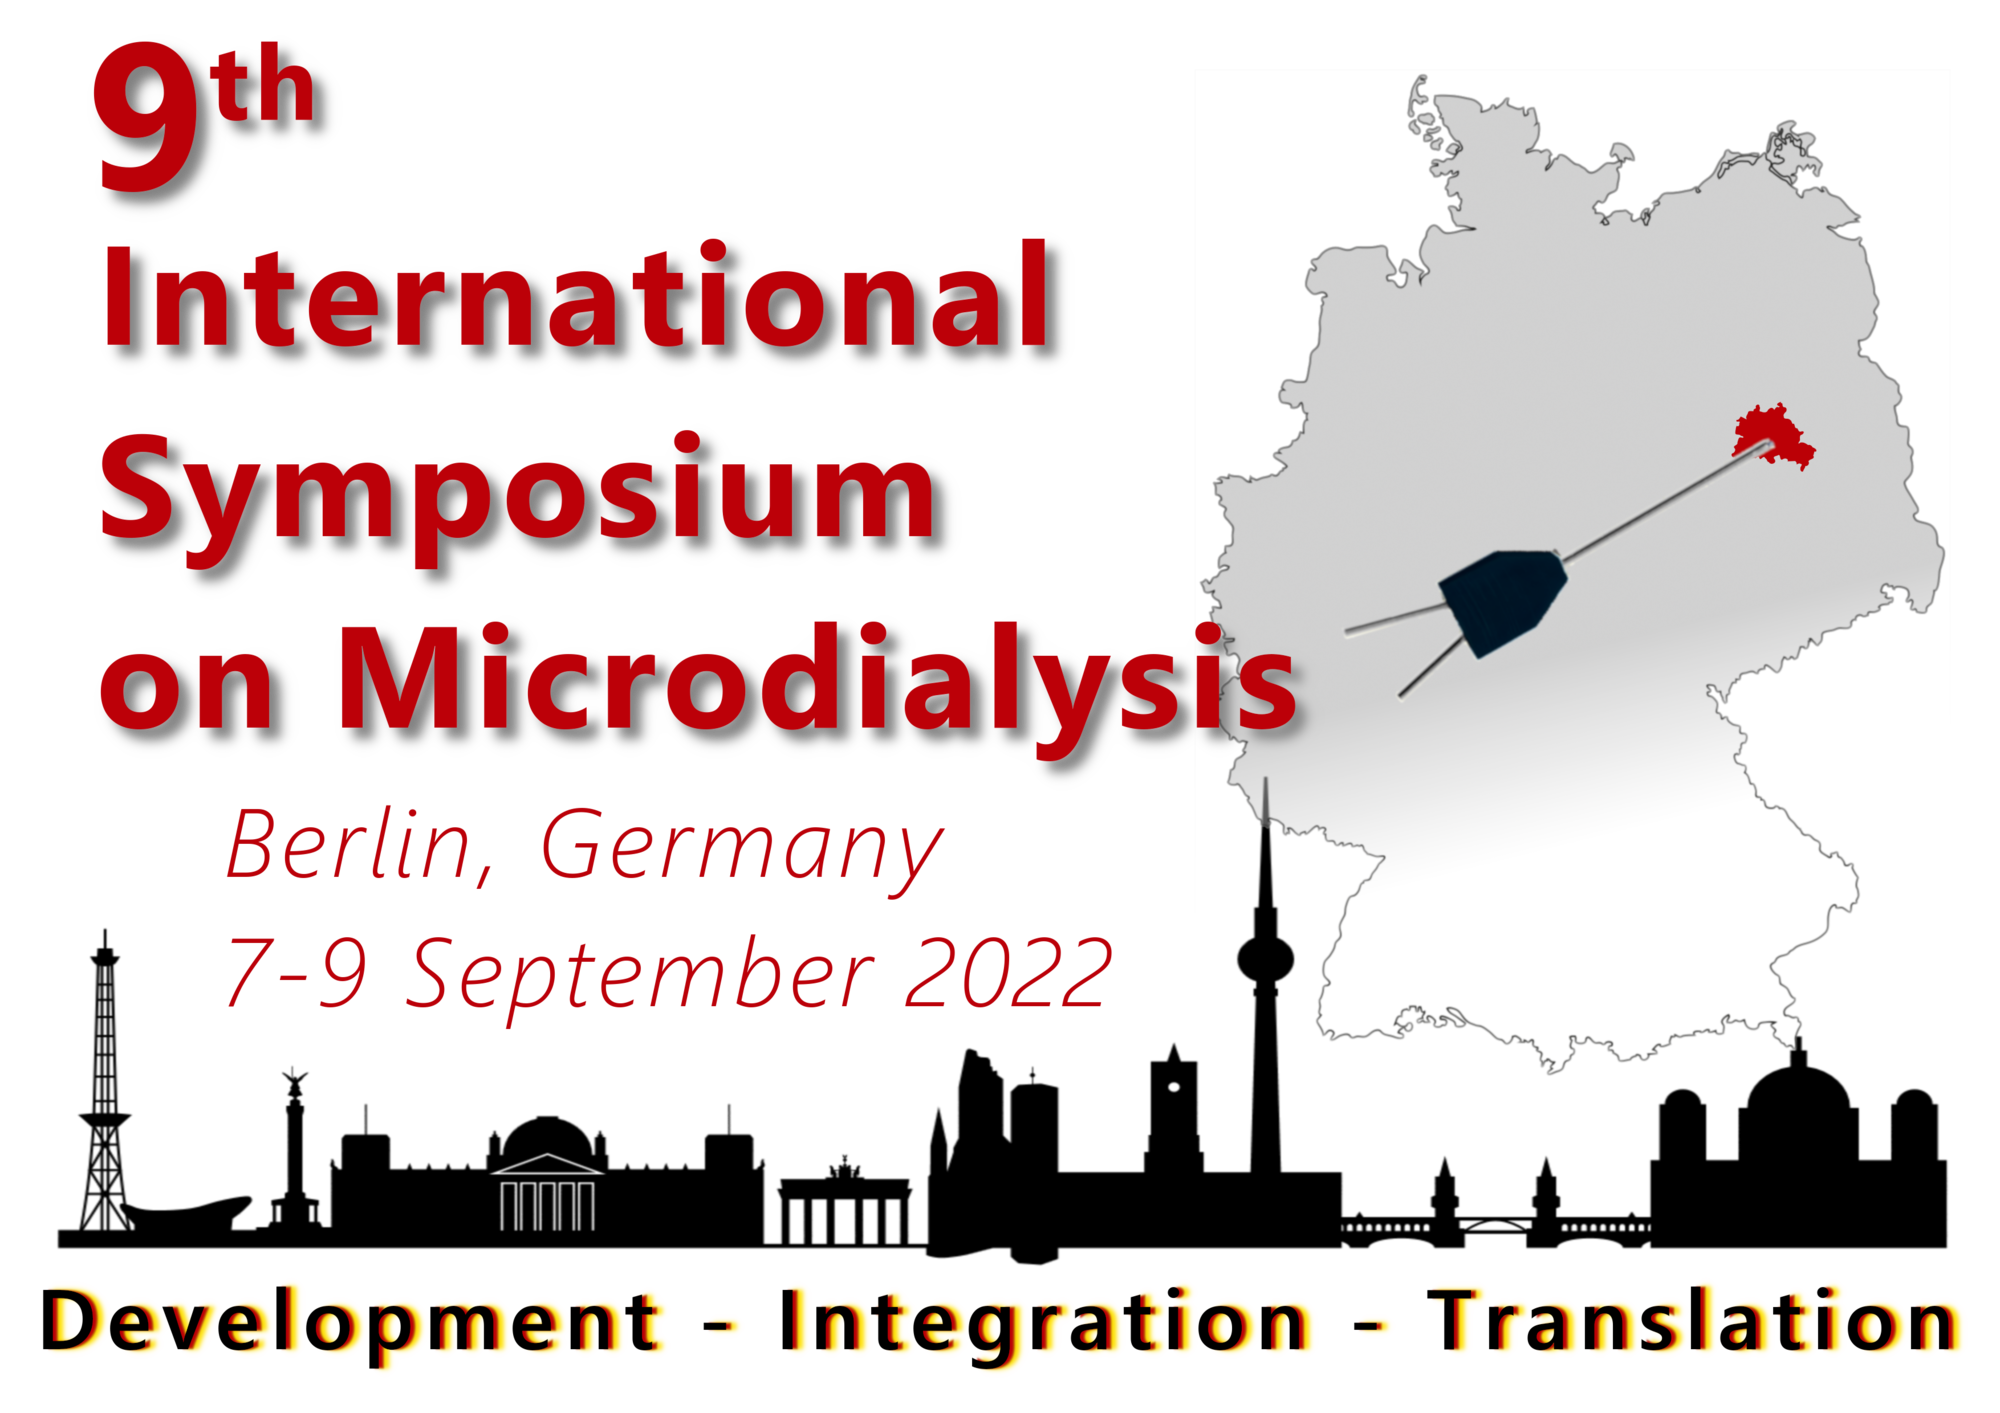 9th International Microdialysis Symposium